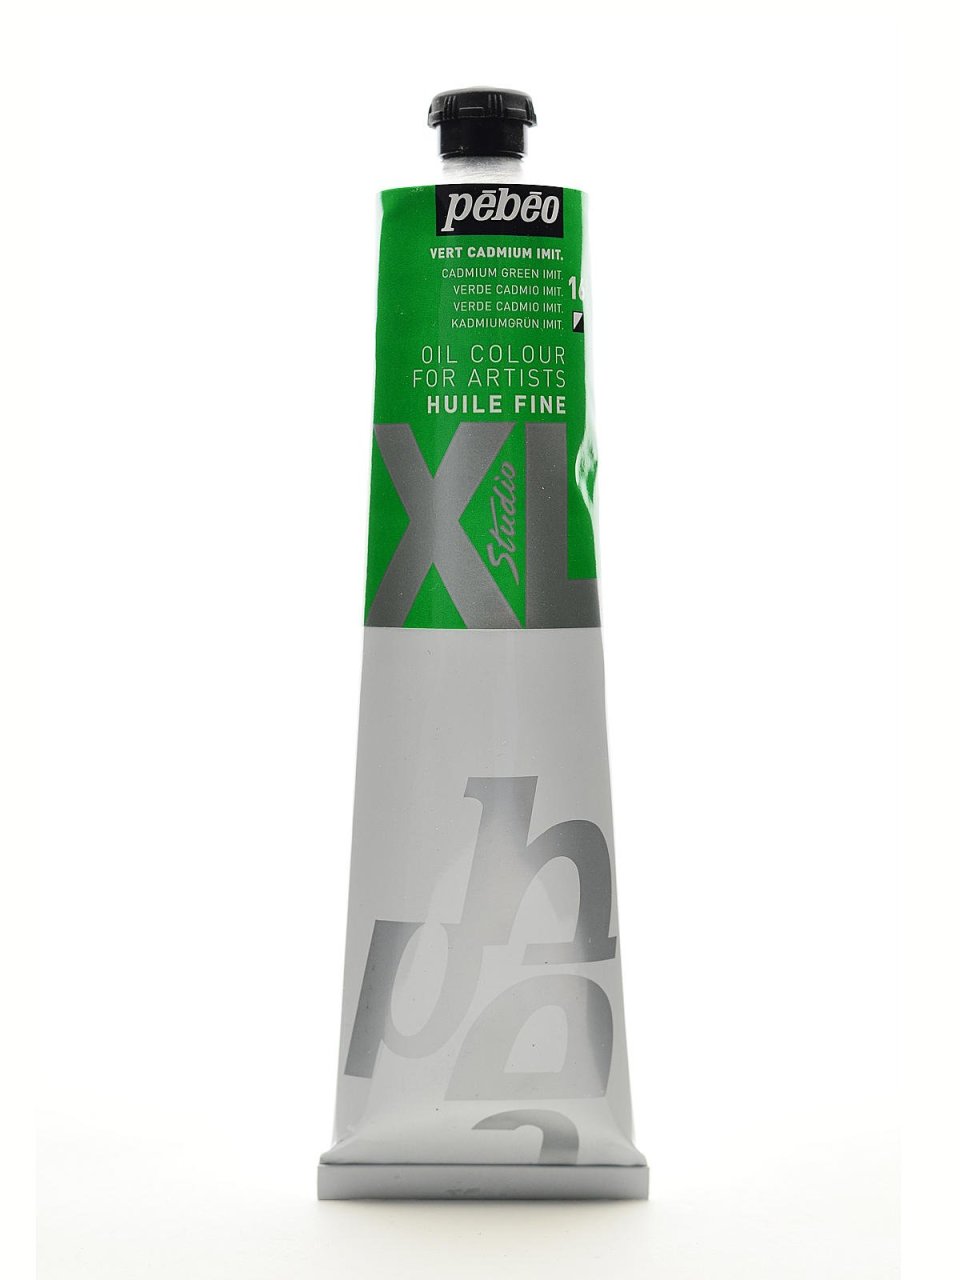 Pebeo Huile Fine XL 200ml. Yağlı Boya 16 Cadmium Green Imit.